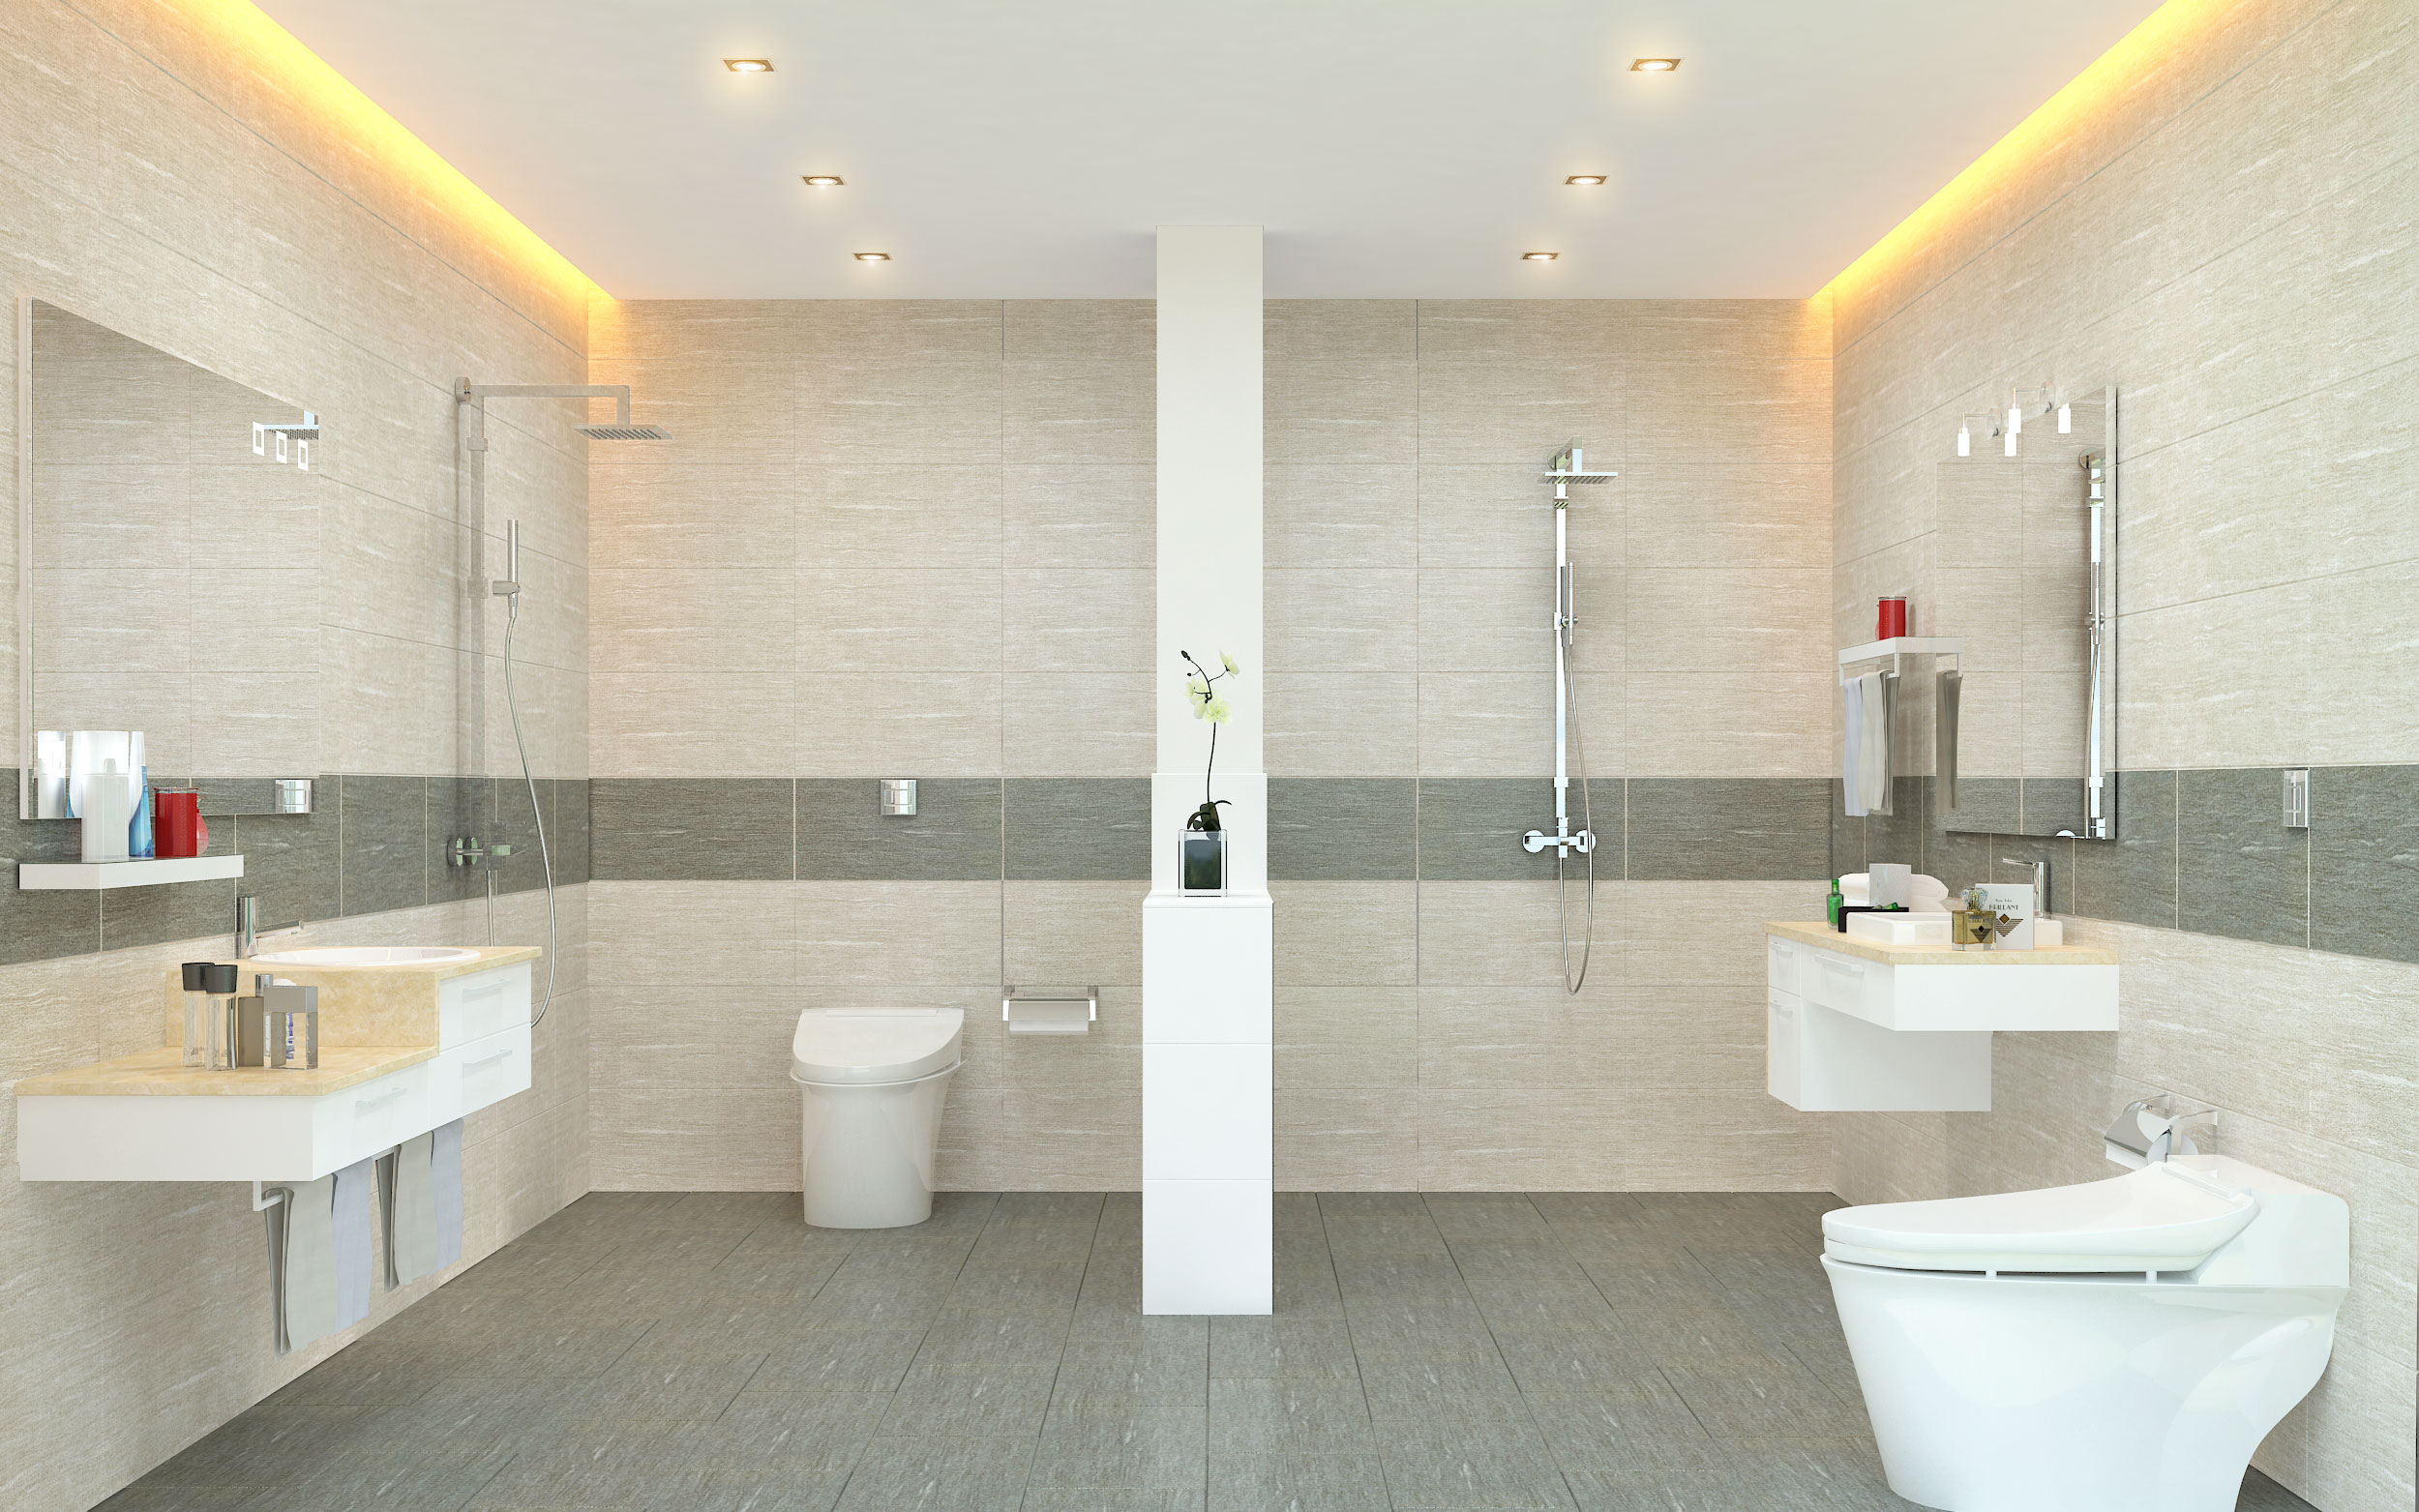 Việc lựa chọn gạch chân tường ốp lát phòng tắm rất quan trọng trong quá trình thiết kế. Để tránh mắc phải các lỗi thường gặp khi lựa chọn gạch, hãy xem qua những kinh nghiệm từ các chuyên gia ngay bây giờ.